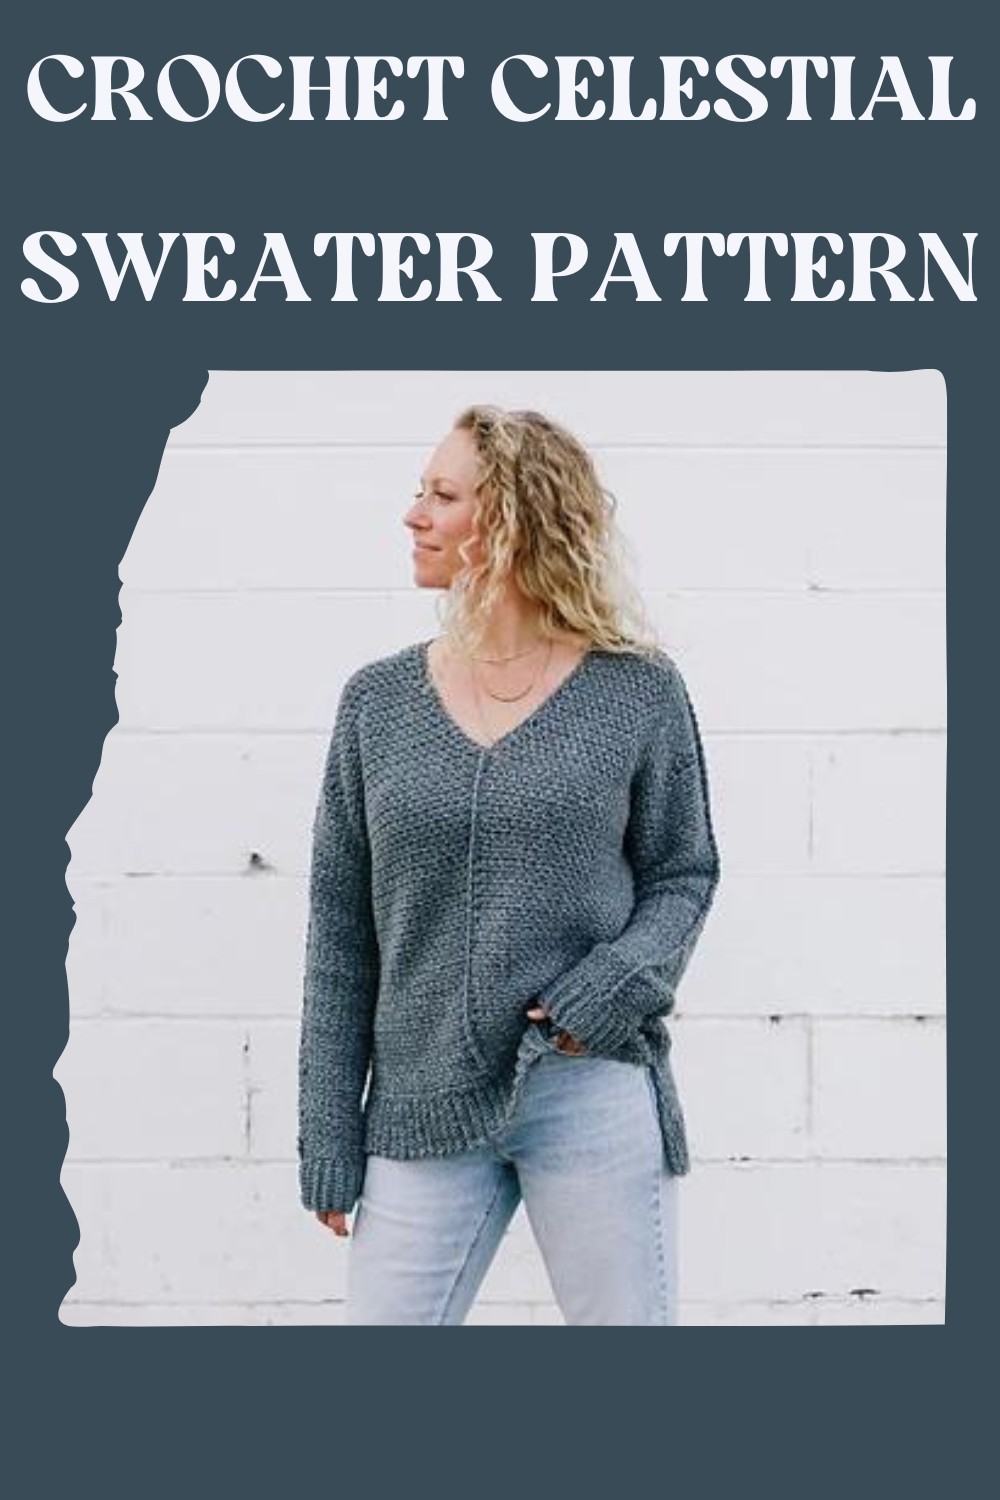  Crochet Celestial Sweater Pattern